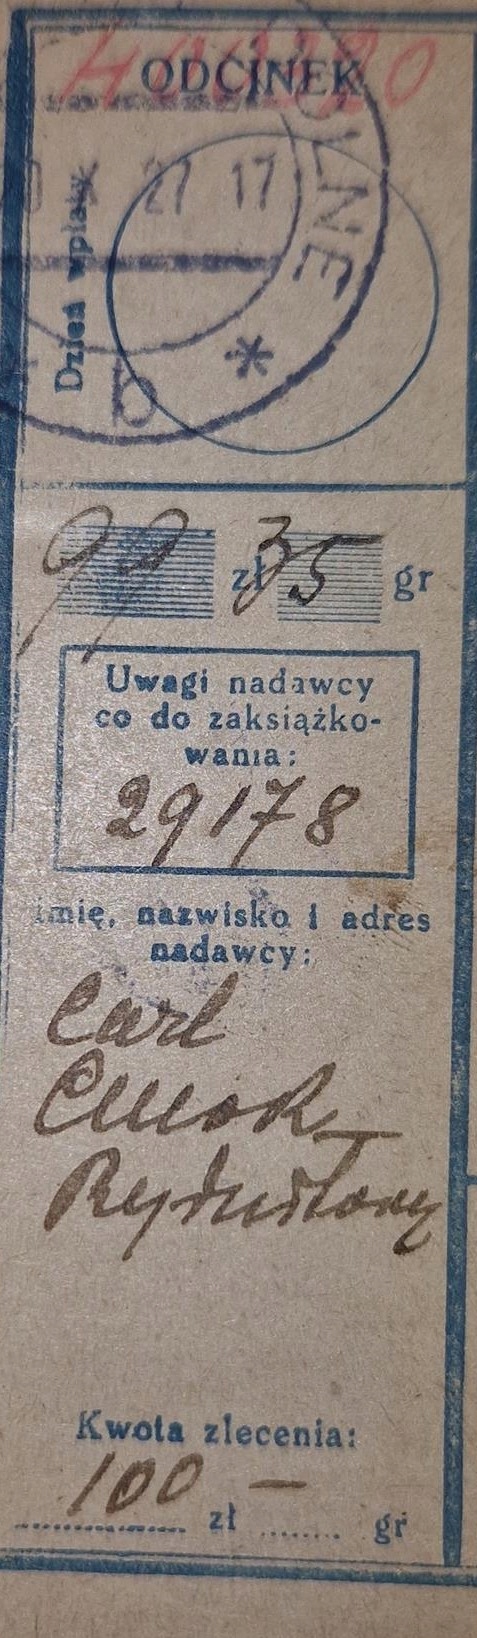 Przekaz pocztowy Rydułtowy Dolne 20.X.1927 rok